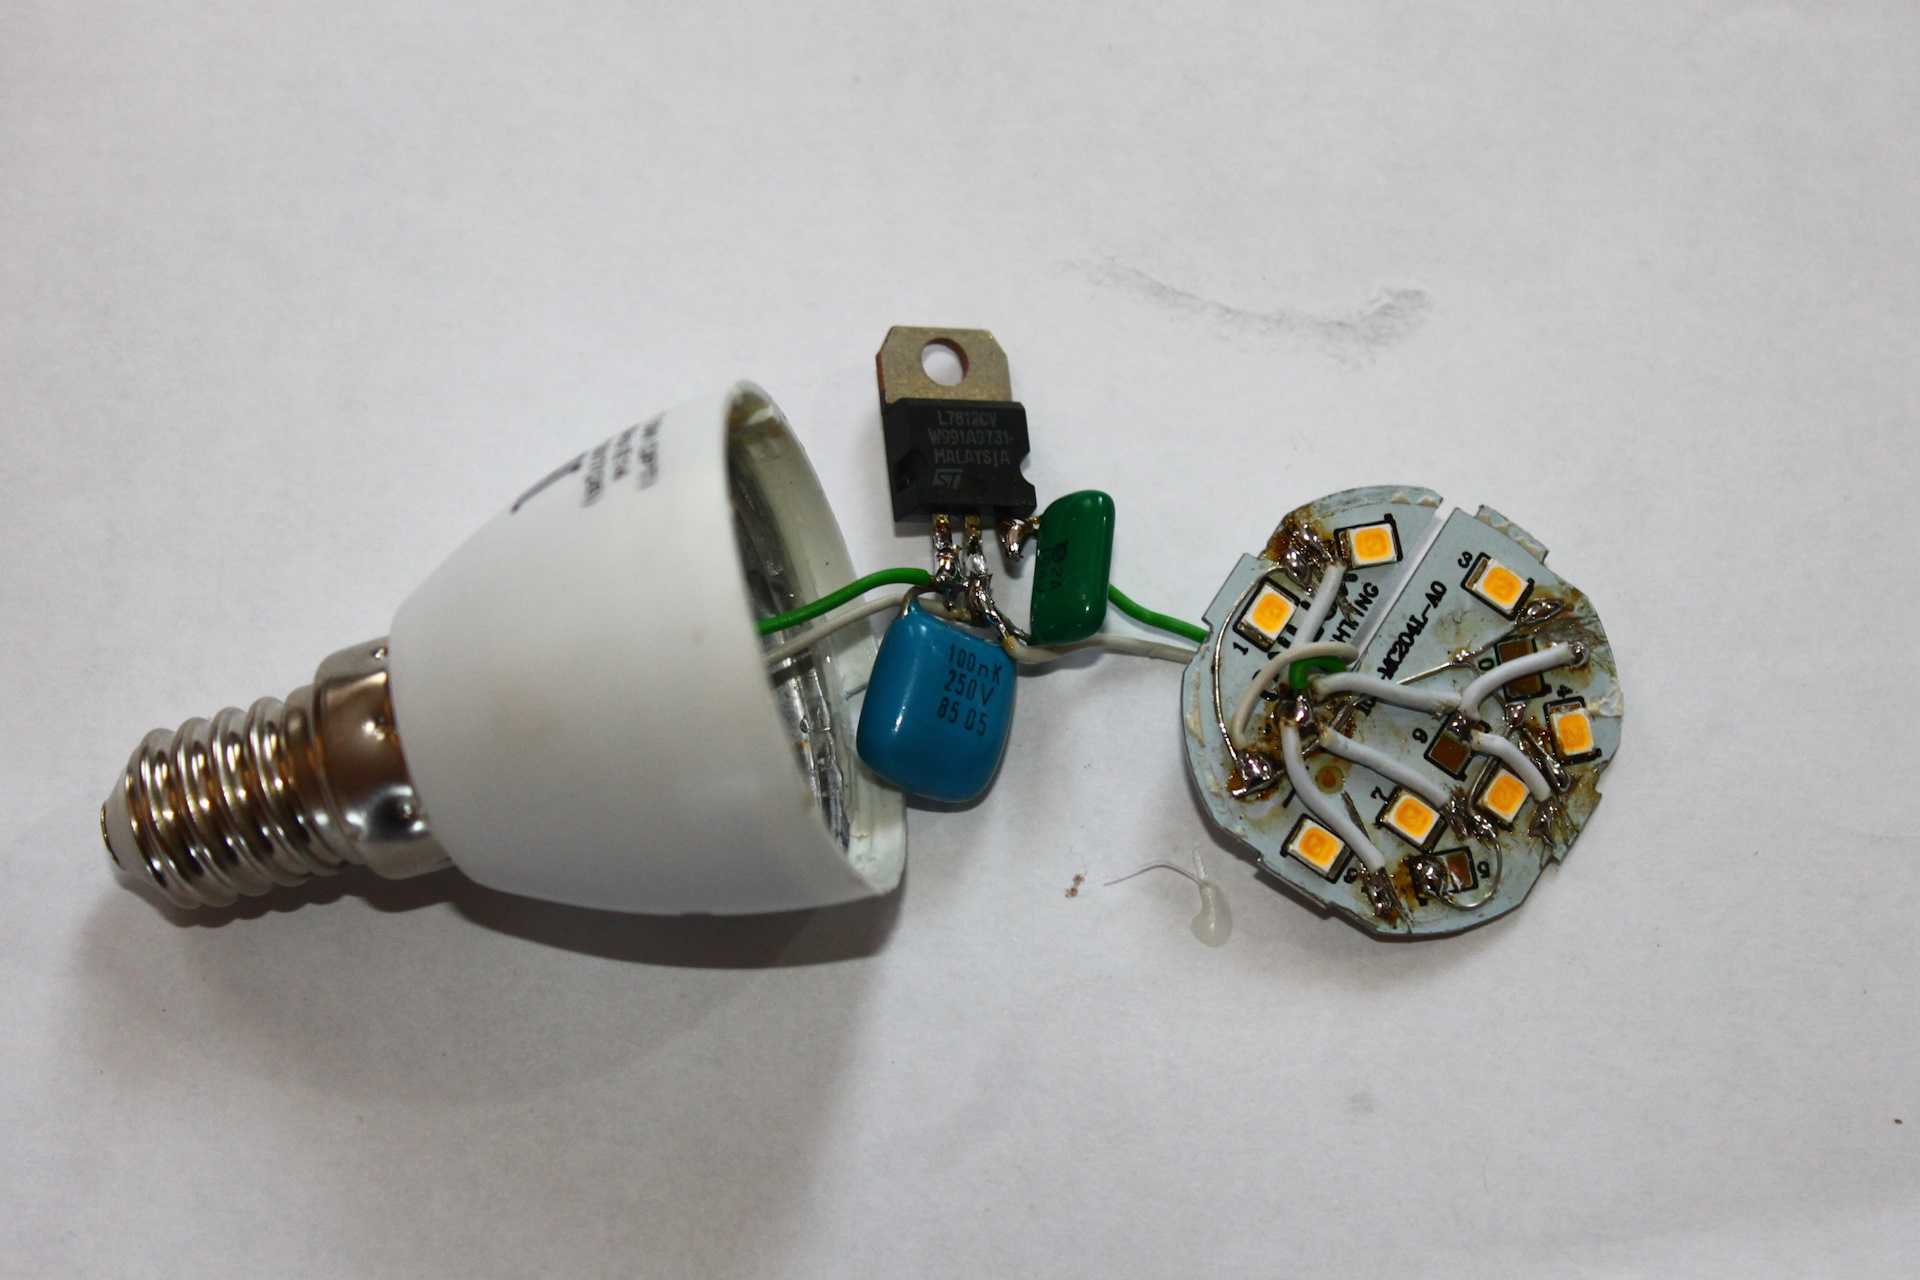 Как выполнить ремонт светодиодных светильников своими руками